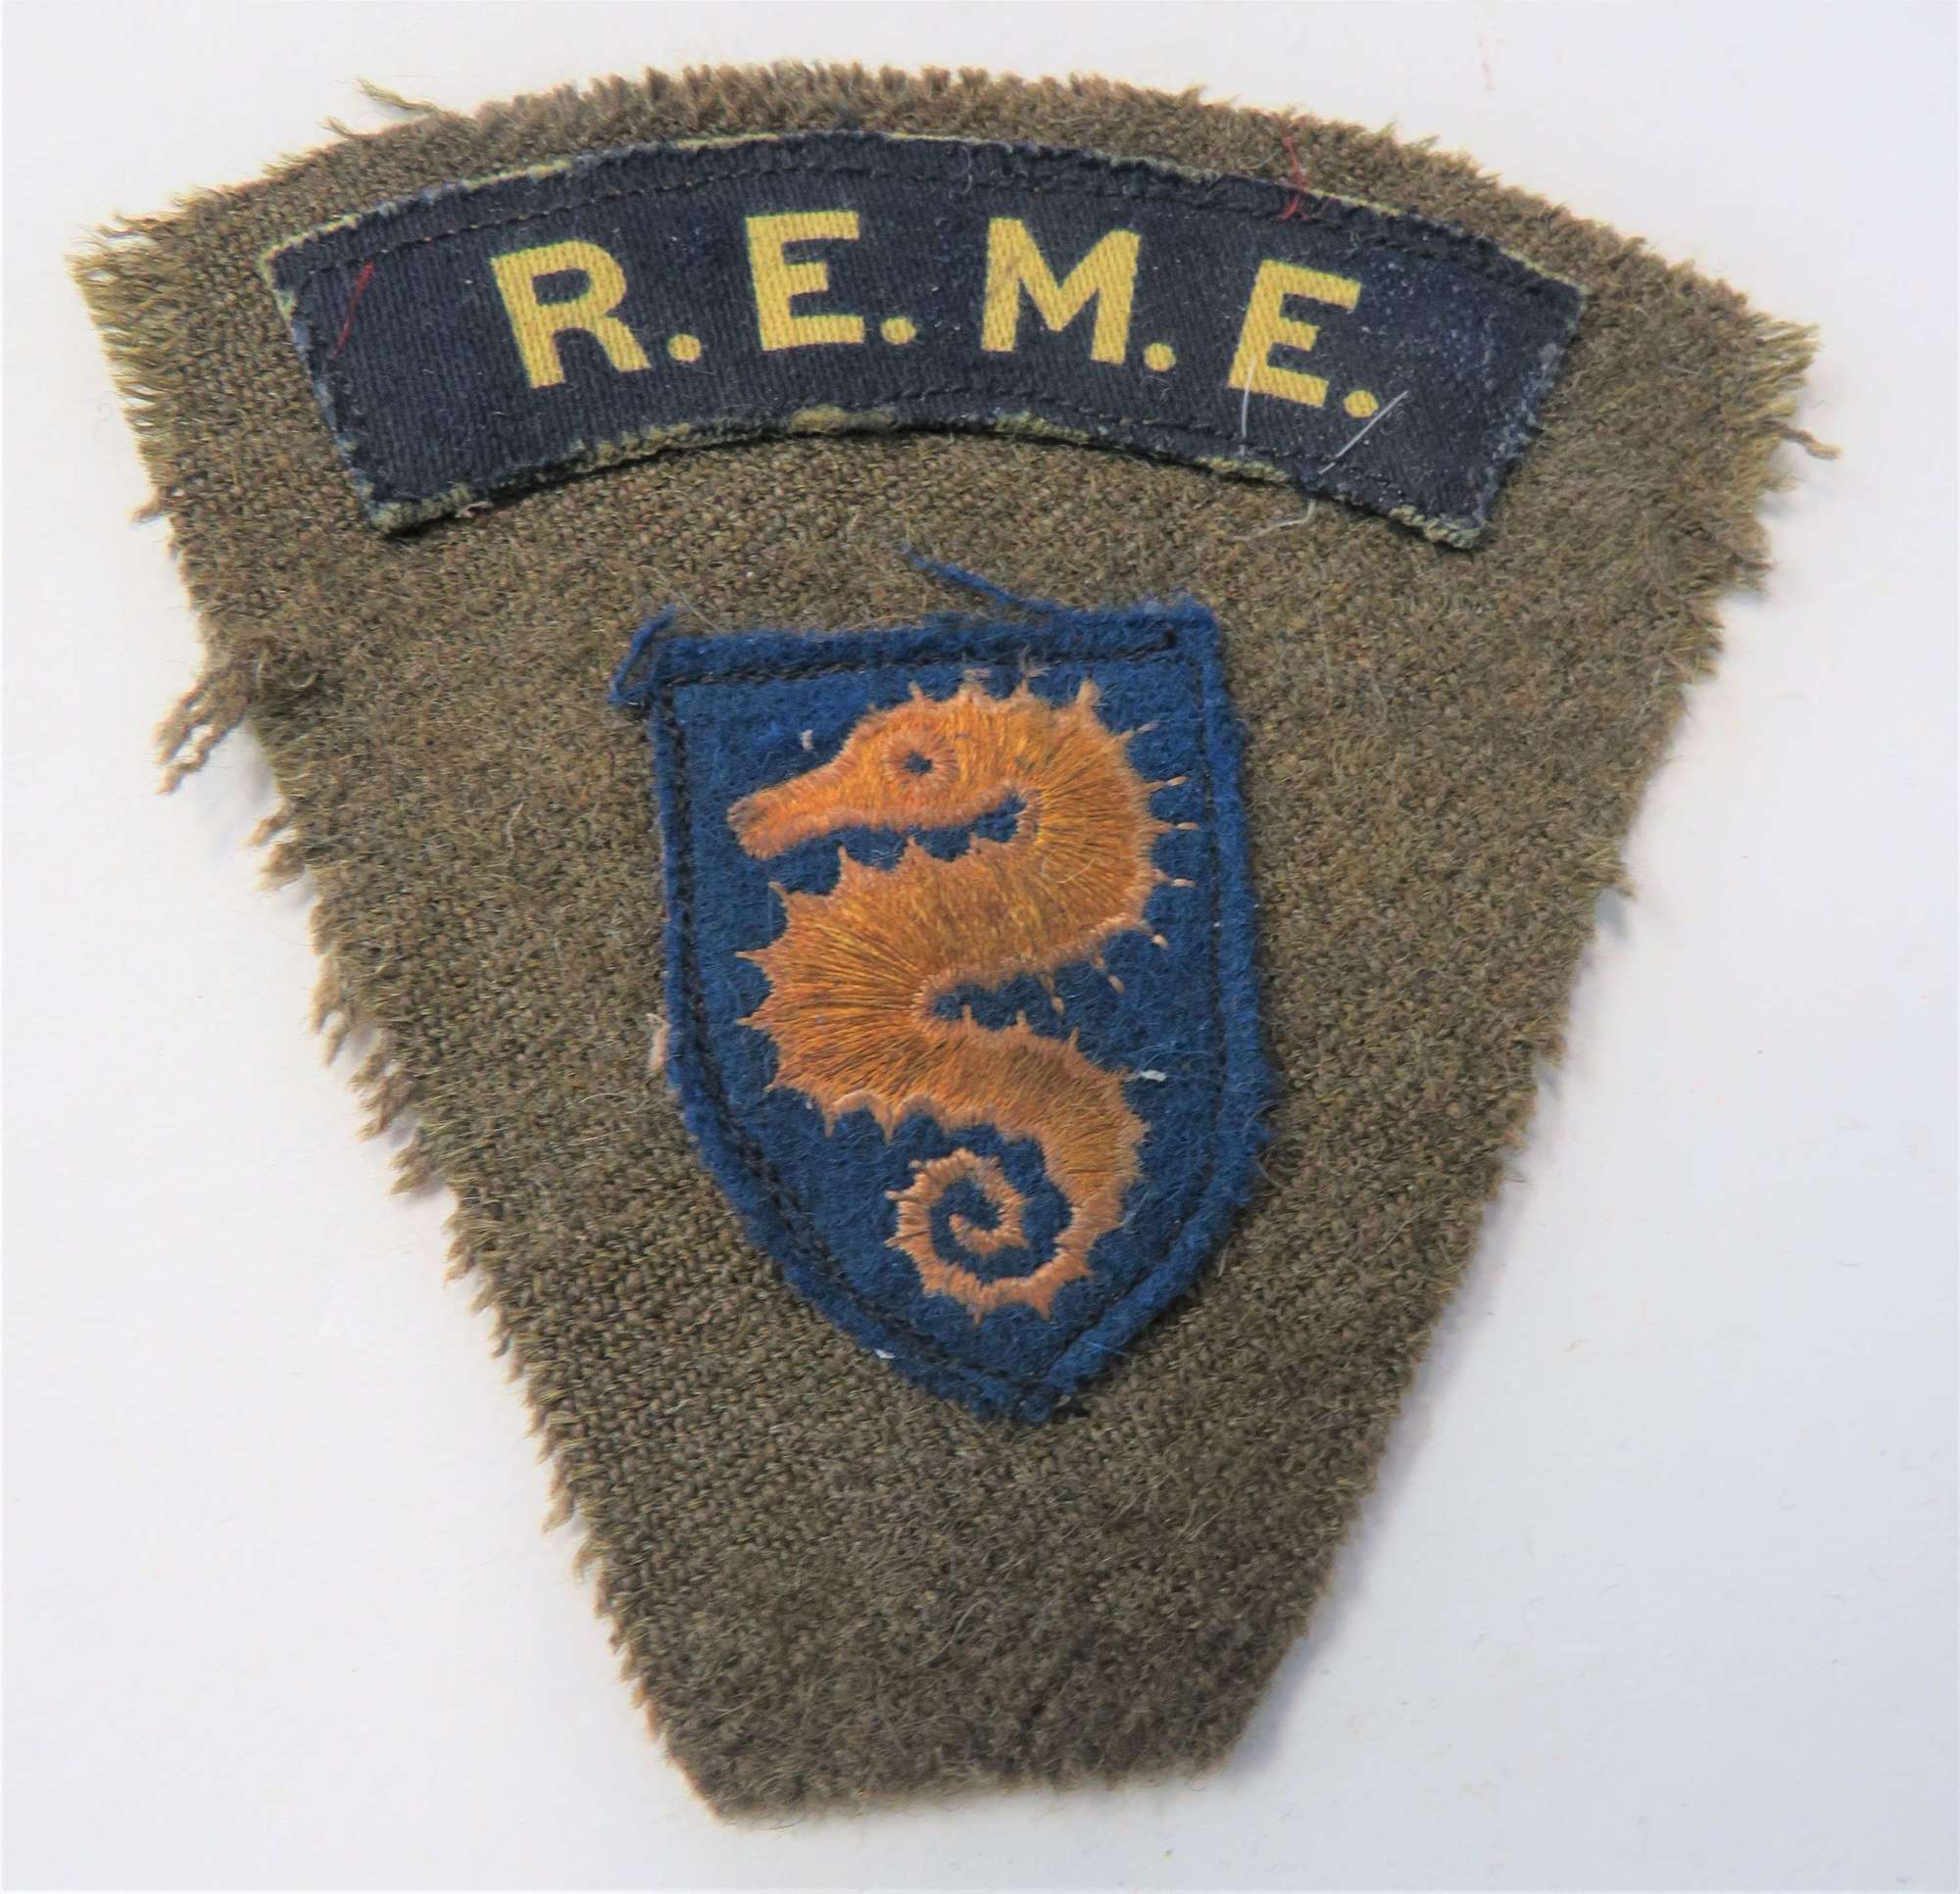 27th Armoured Brigade R.E.M.E Formation Group